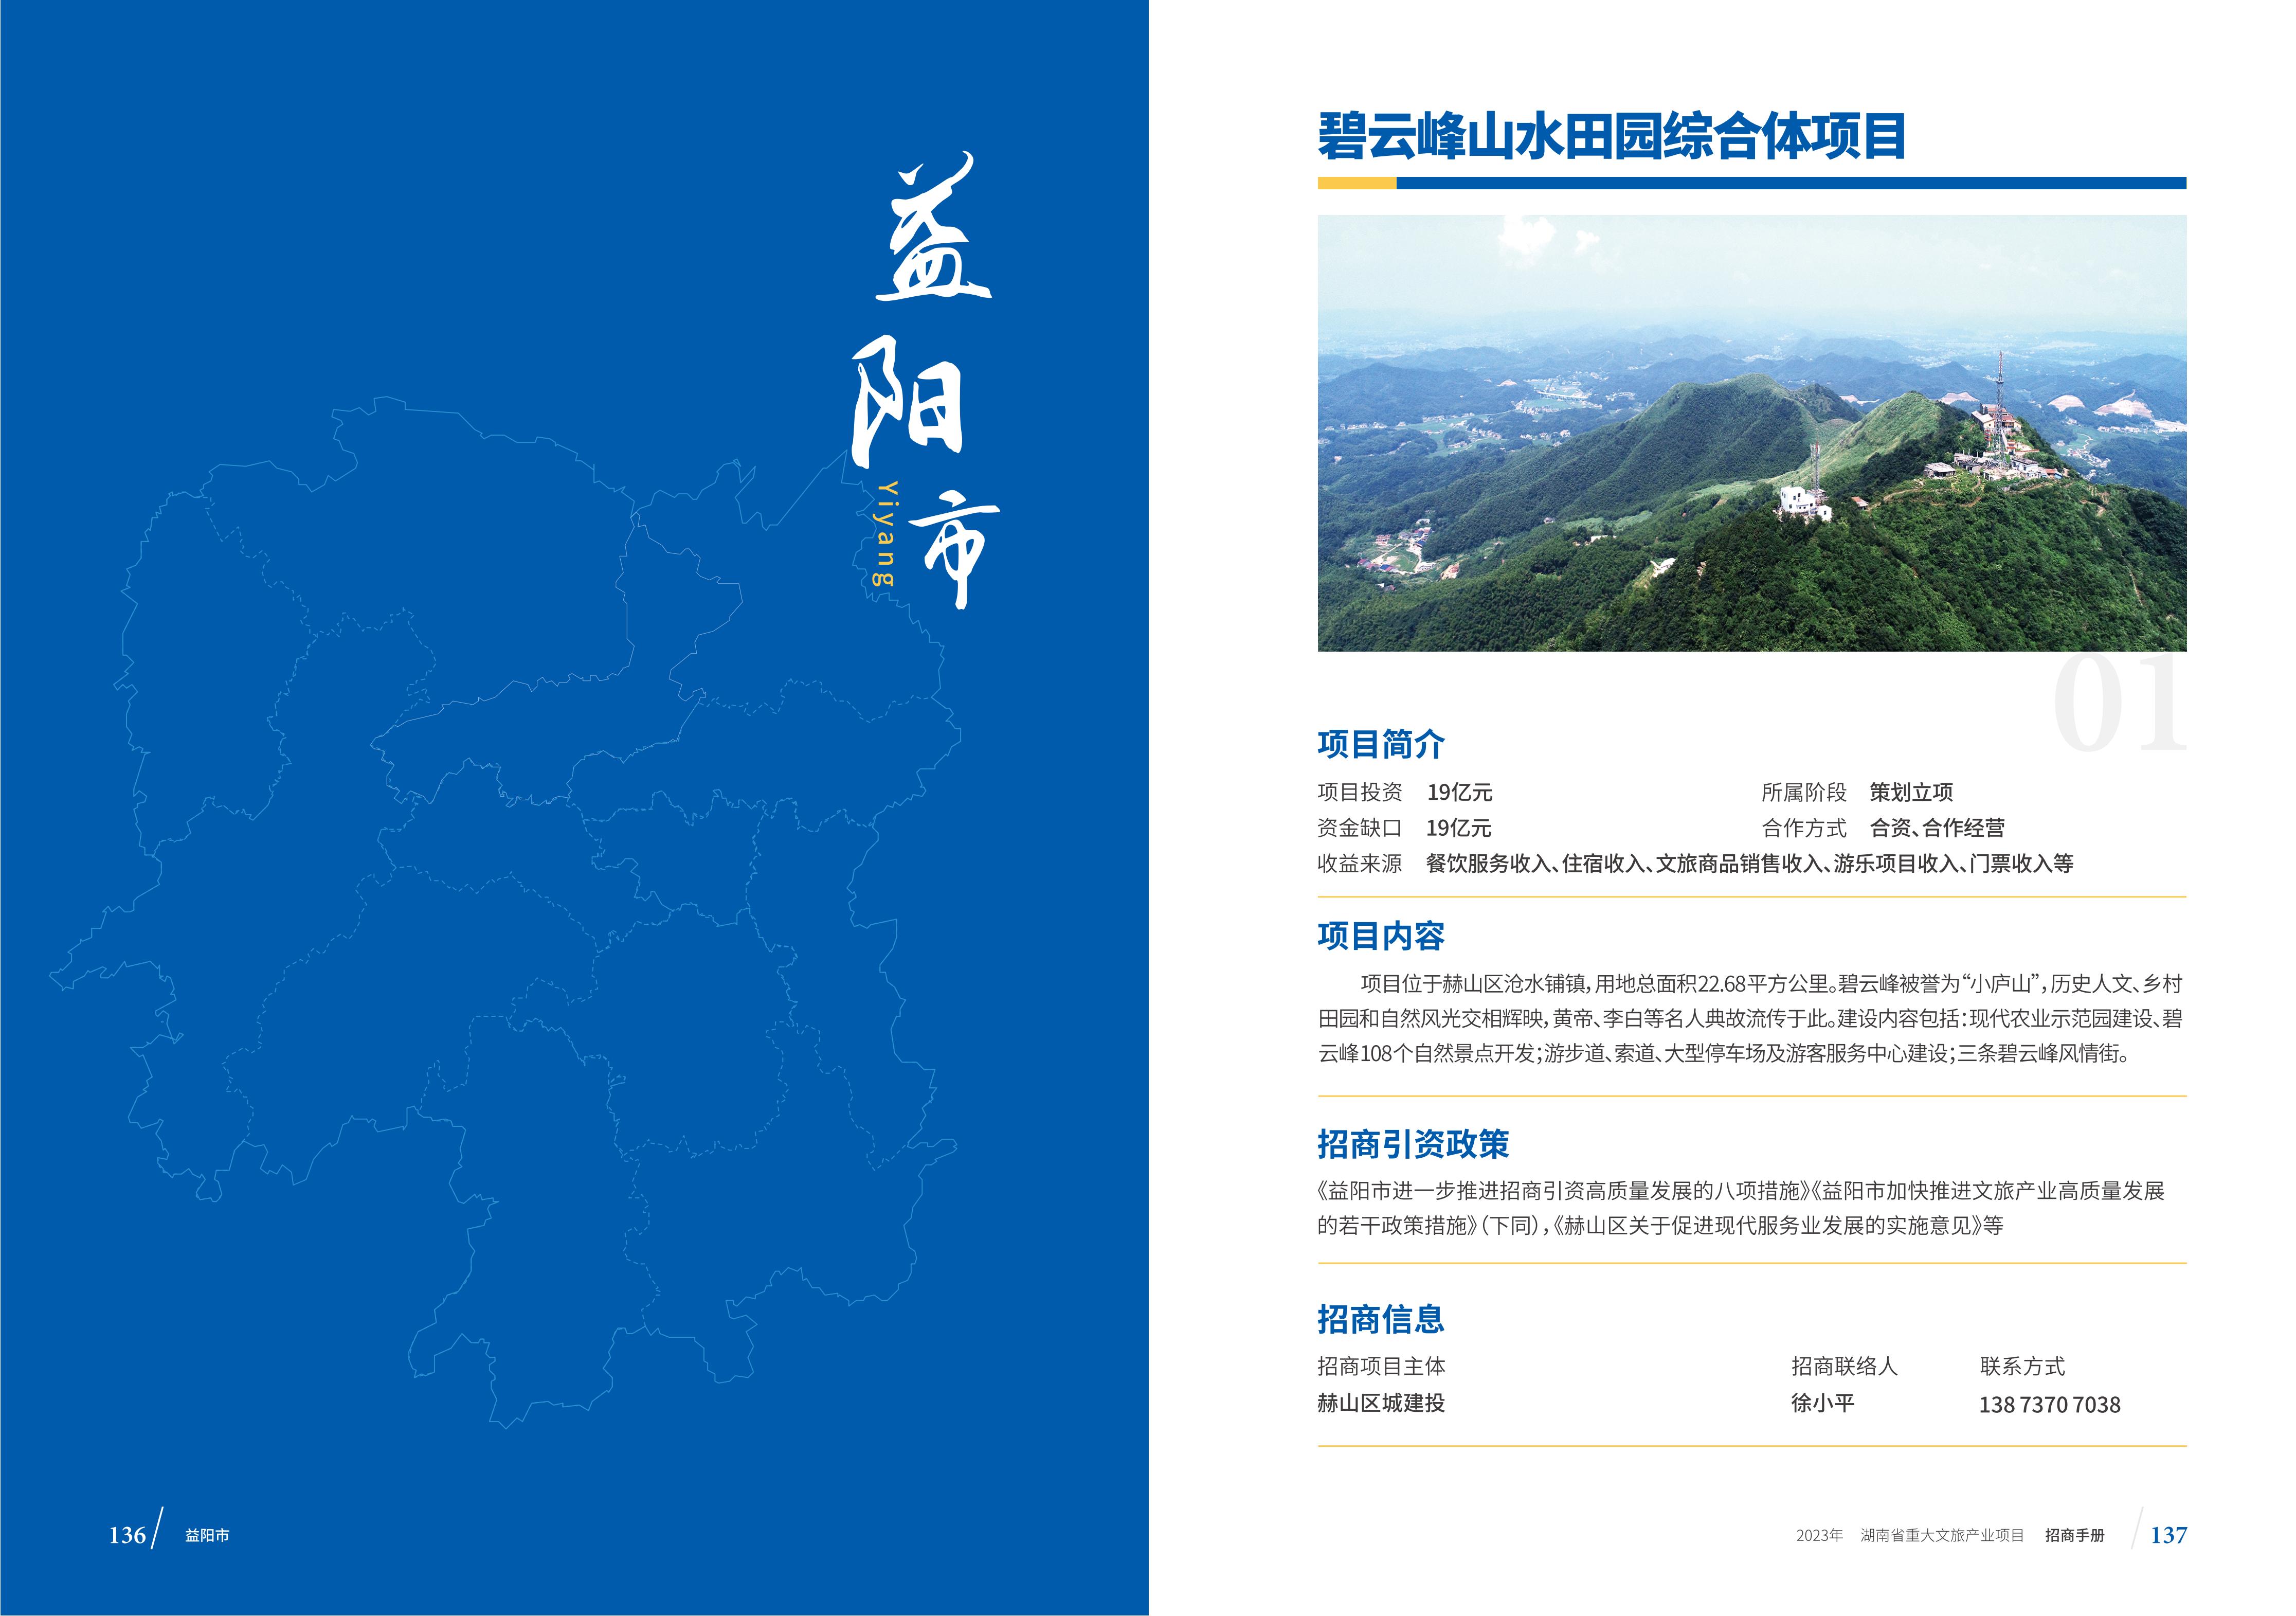 湖南省重大文旅产业项目招手册线上链接版_76.jpg